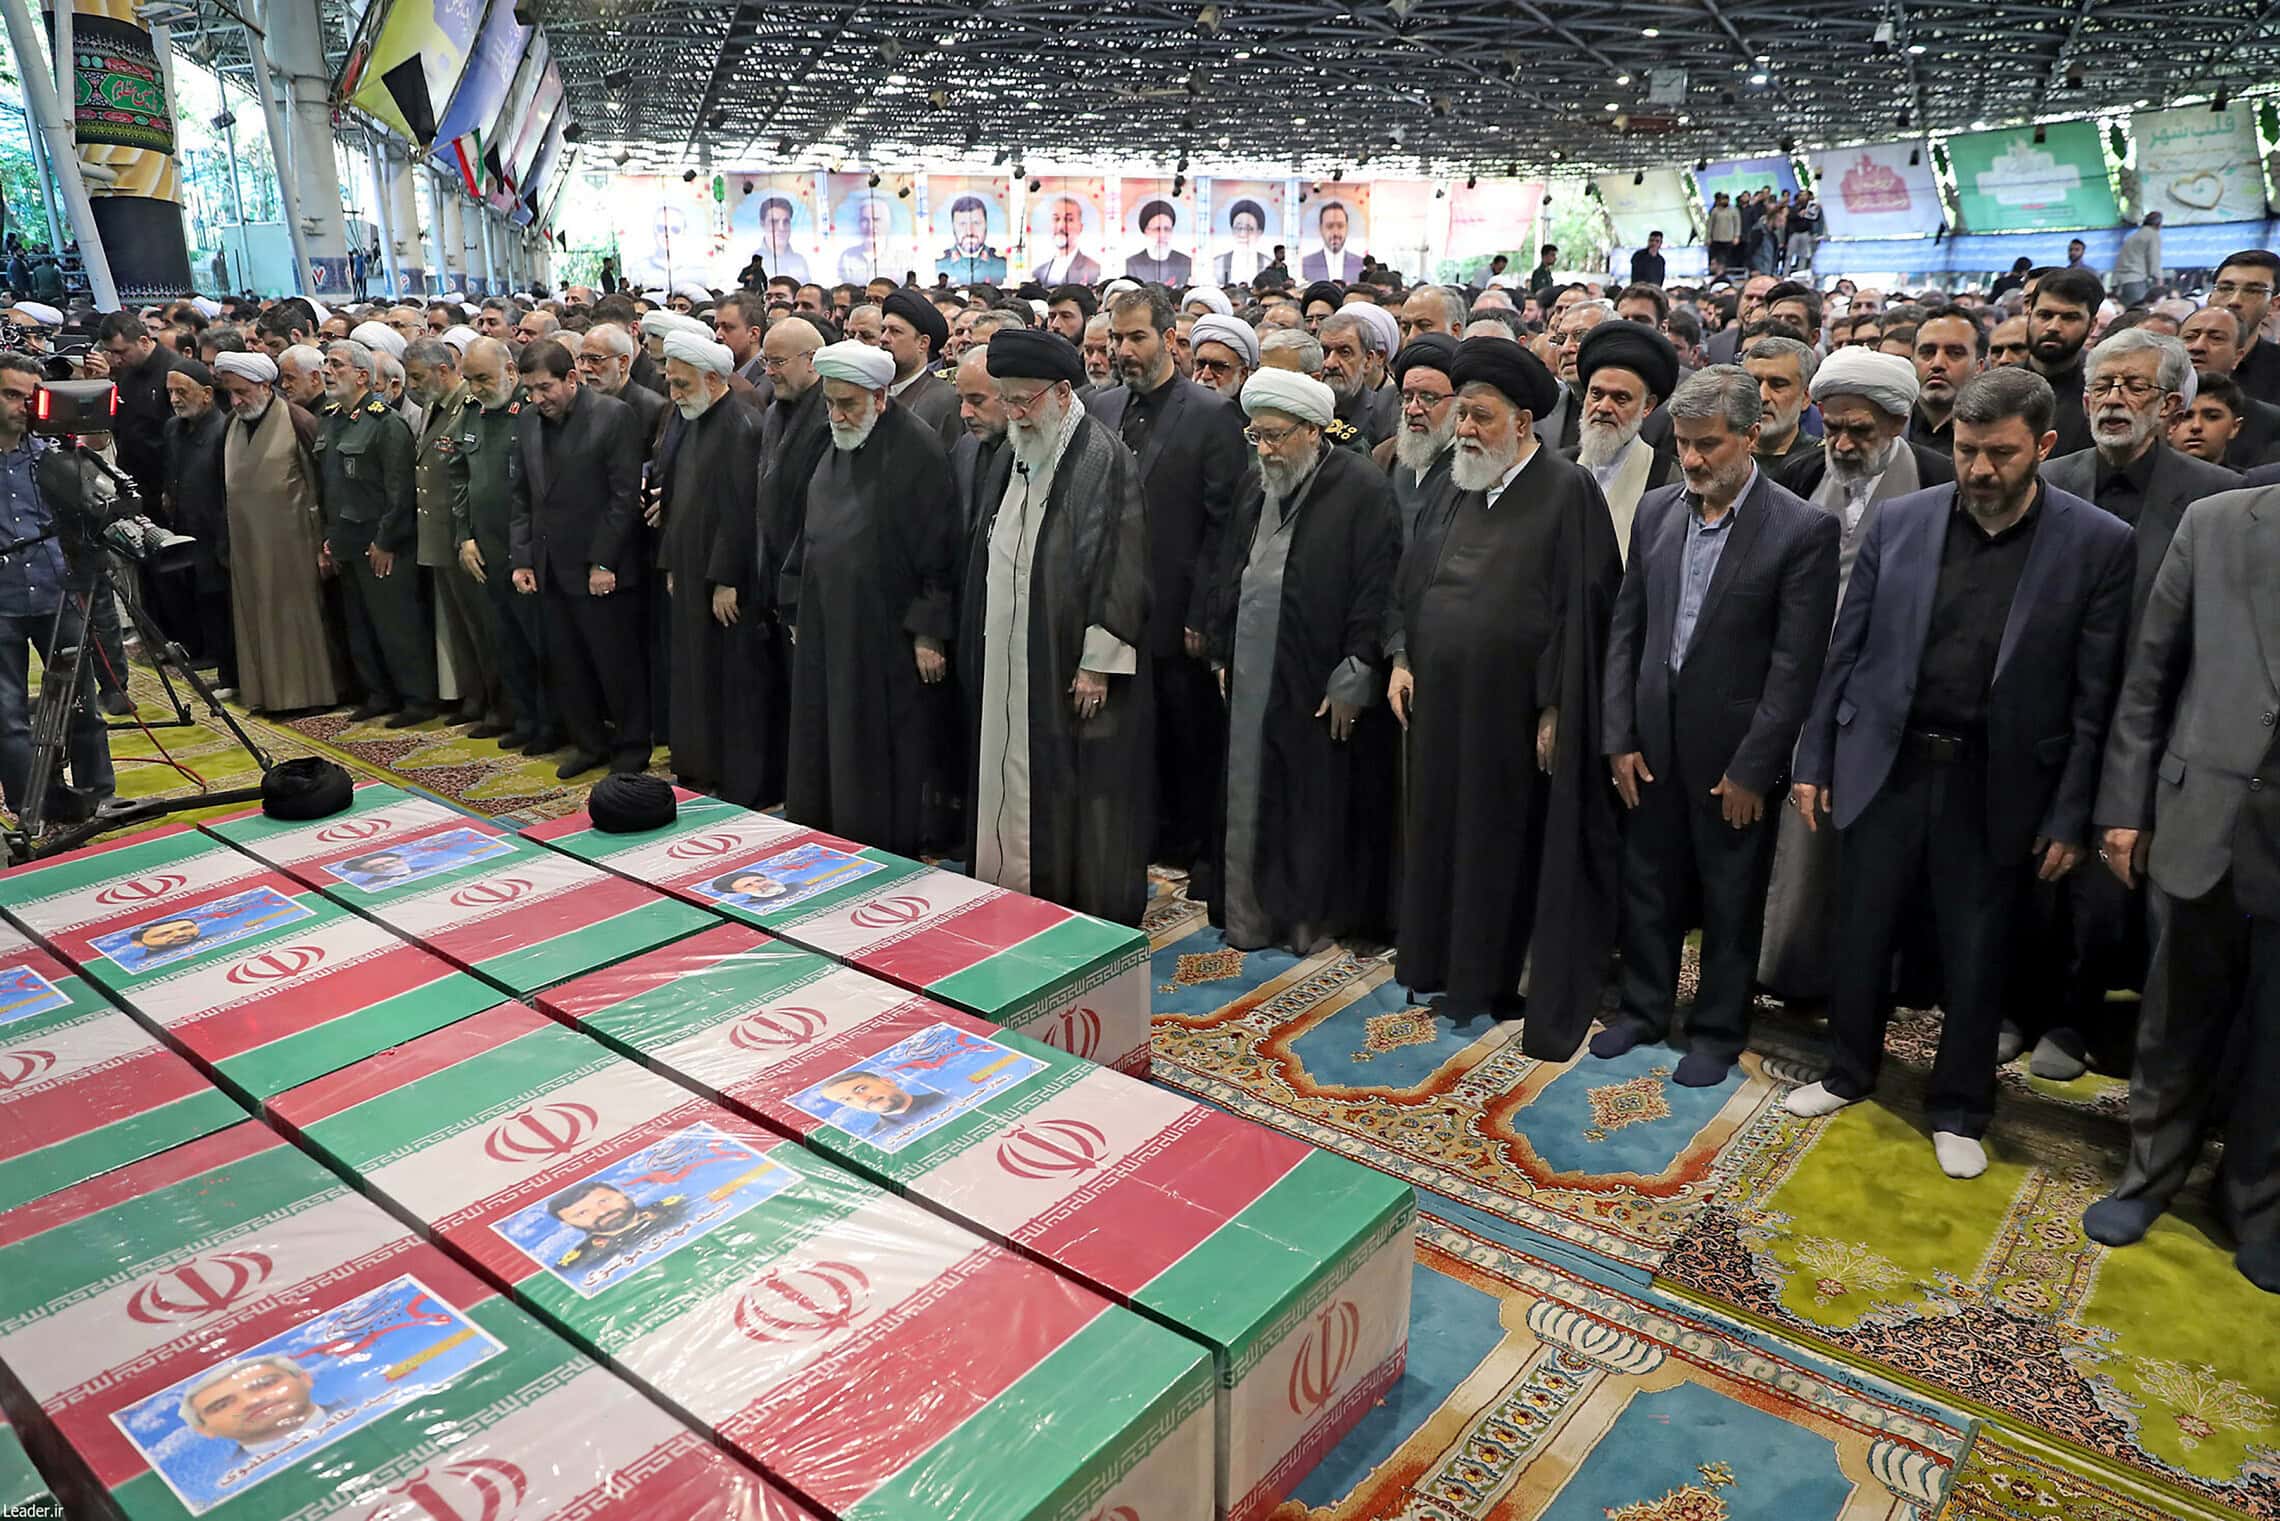 המנהיג העליון של איראן עלי חמינאי (במרכז) מוביל תפילה לצד ארונותיהם של ההרוגים בהתרסקות המסוק, ביניהם הנשיא אבראהים ראיסי. 22 במאי 2024